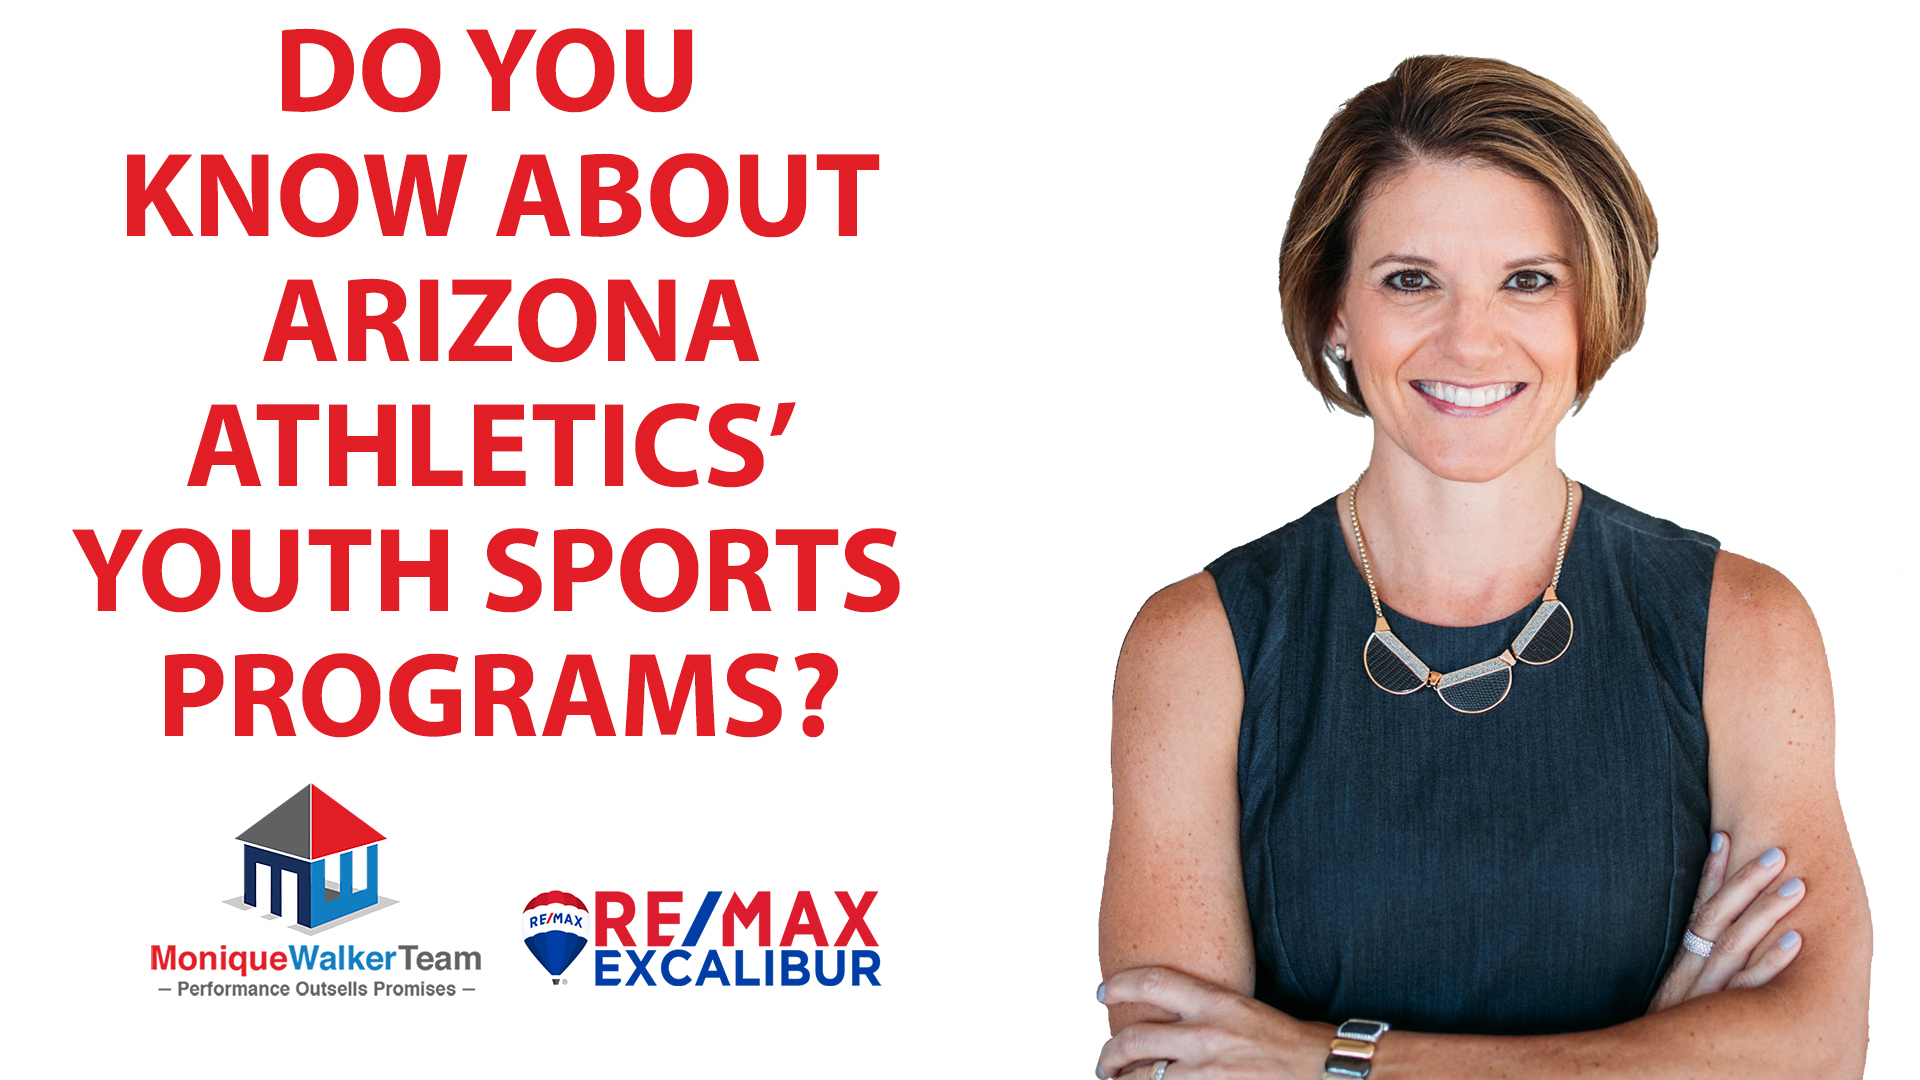 Youth Sports Programs With Arizona Athletics